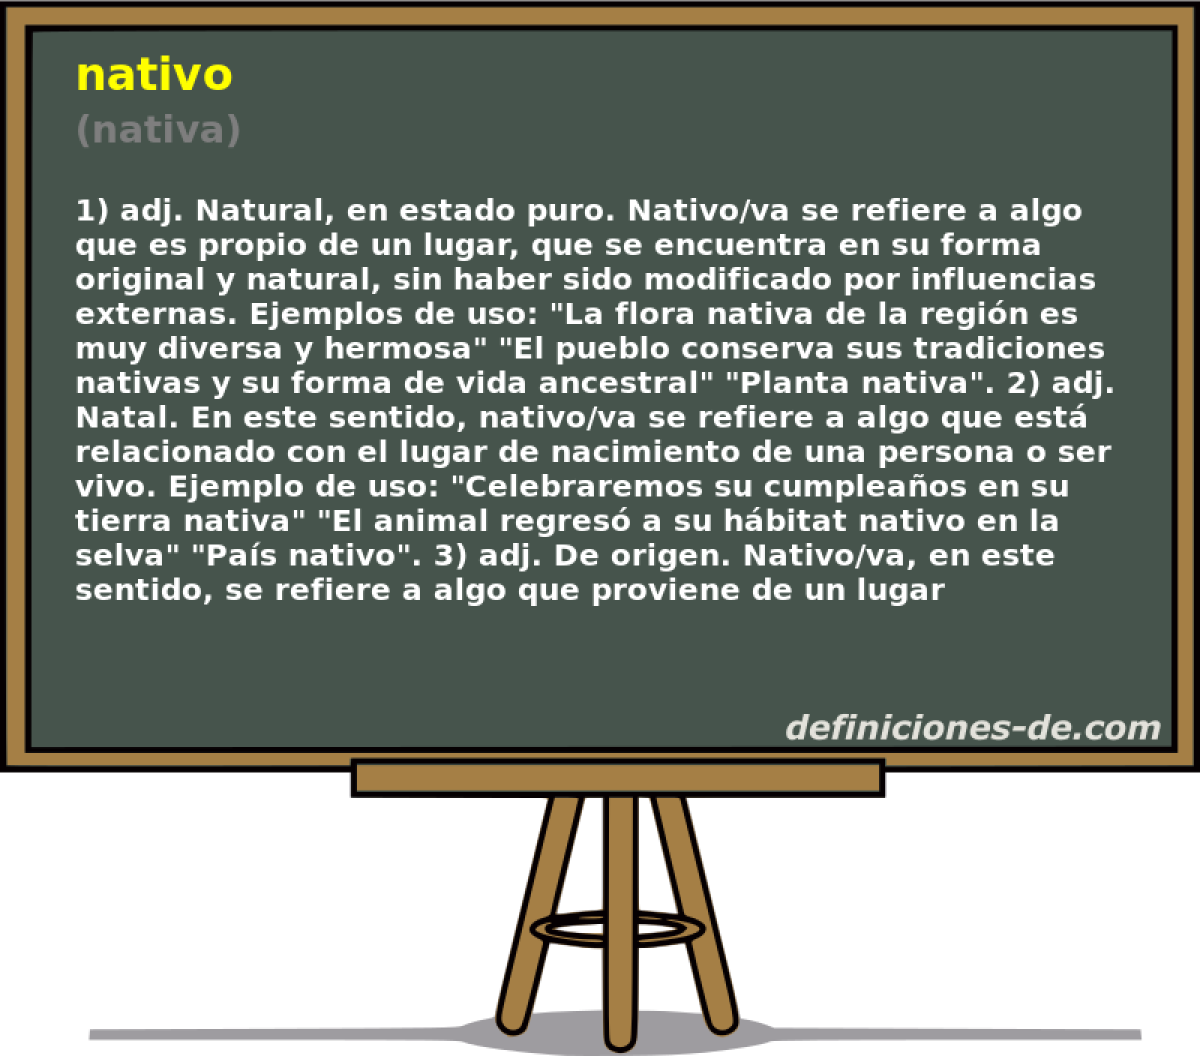 nativo (nativa)